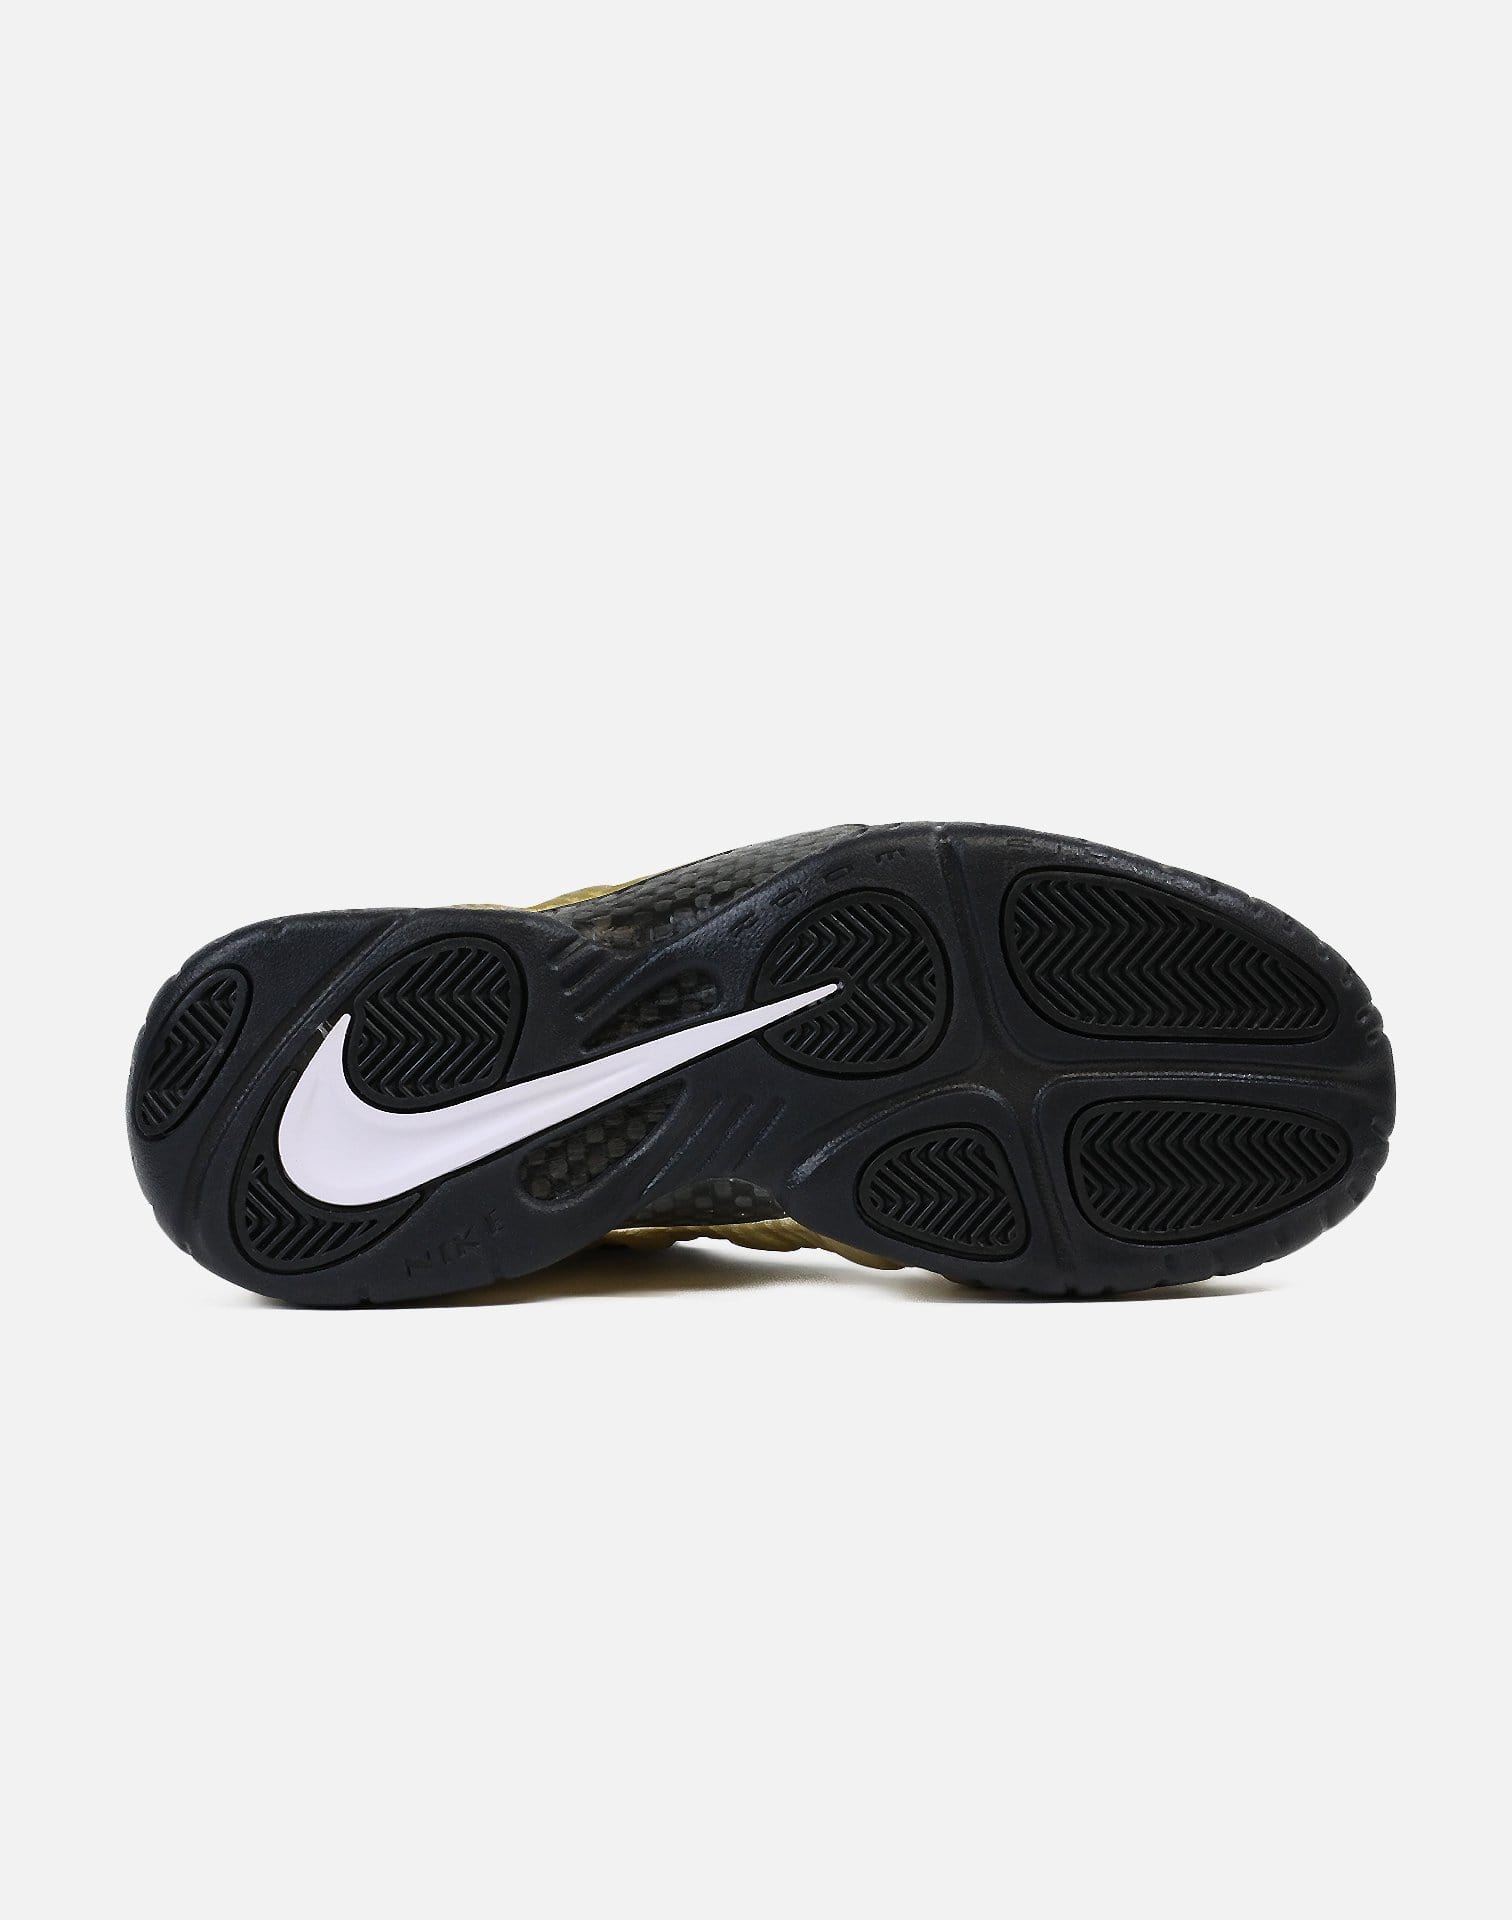 Nike Air Foamposite Pro (Metallic Gold/Black-Black-White)